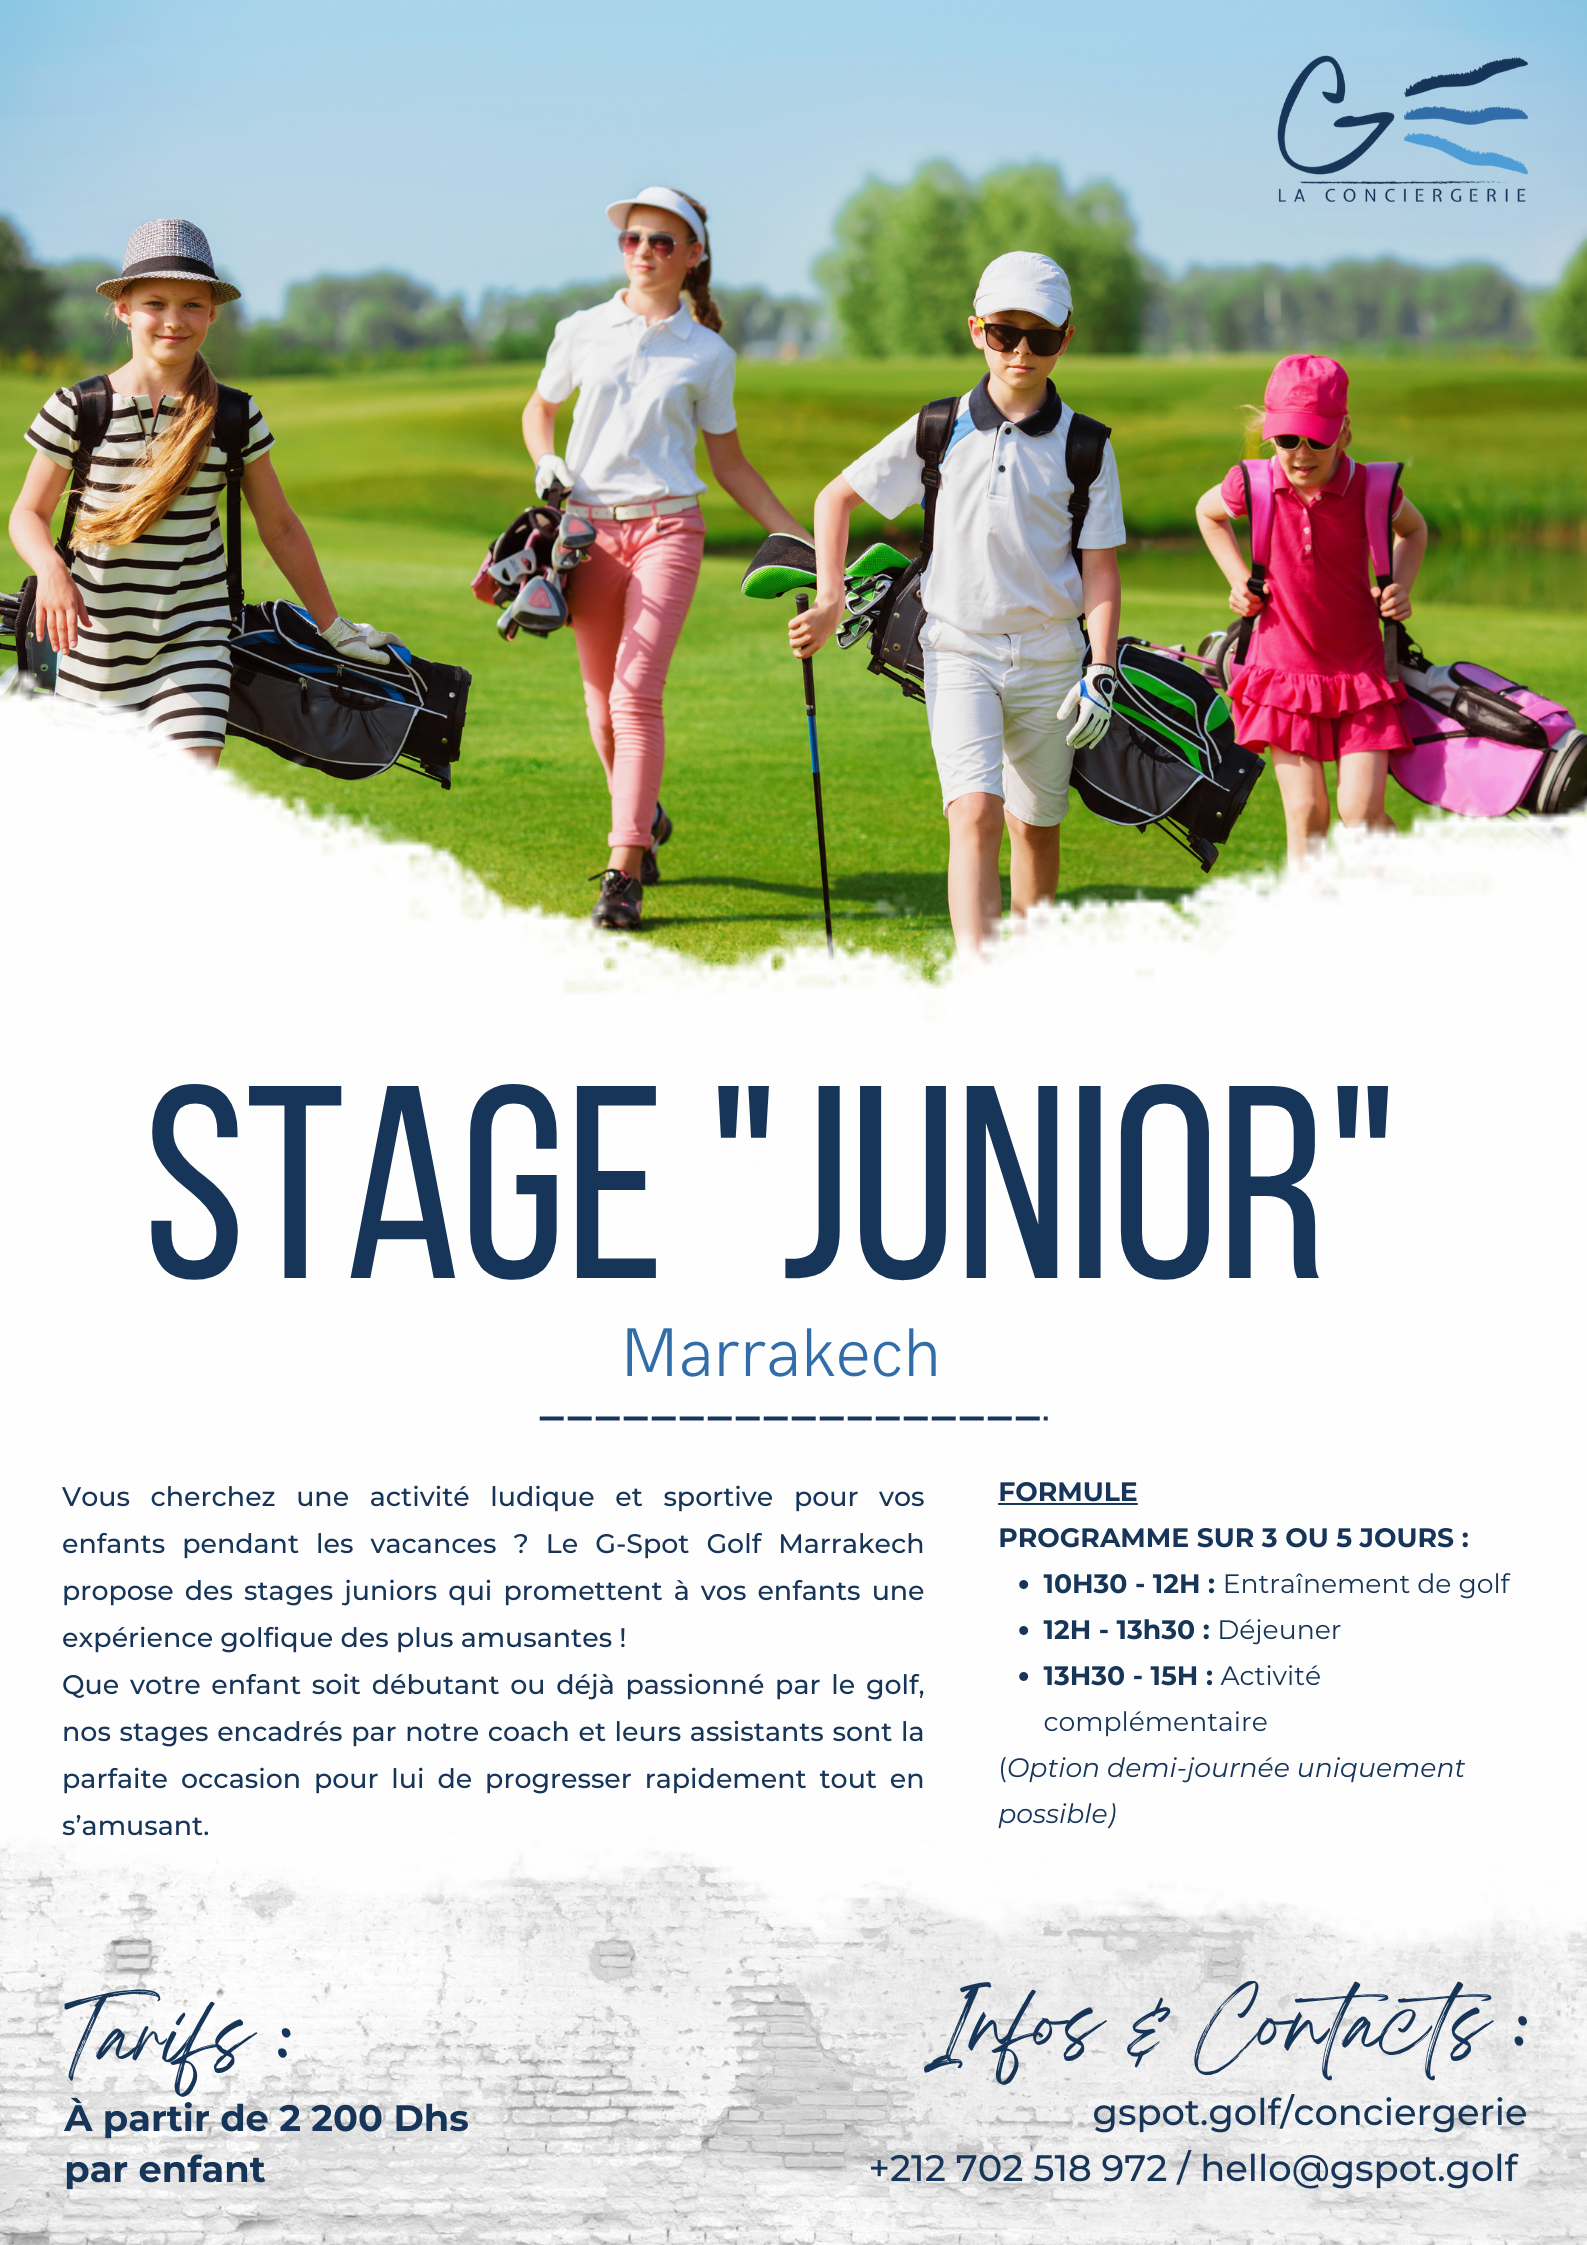 Des stages juniors ludiques et fun pour s’initier au golf !